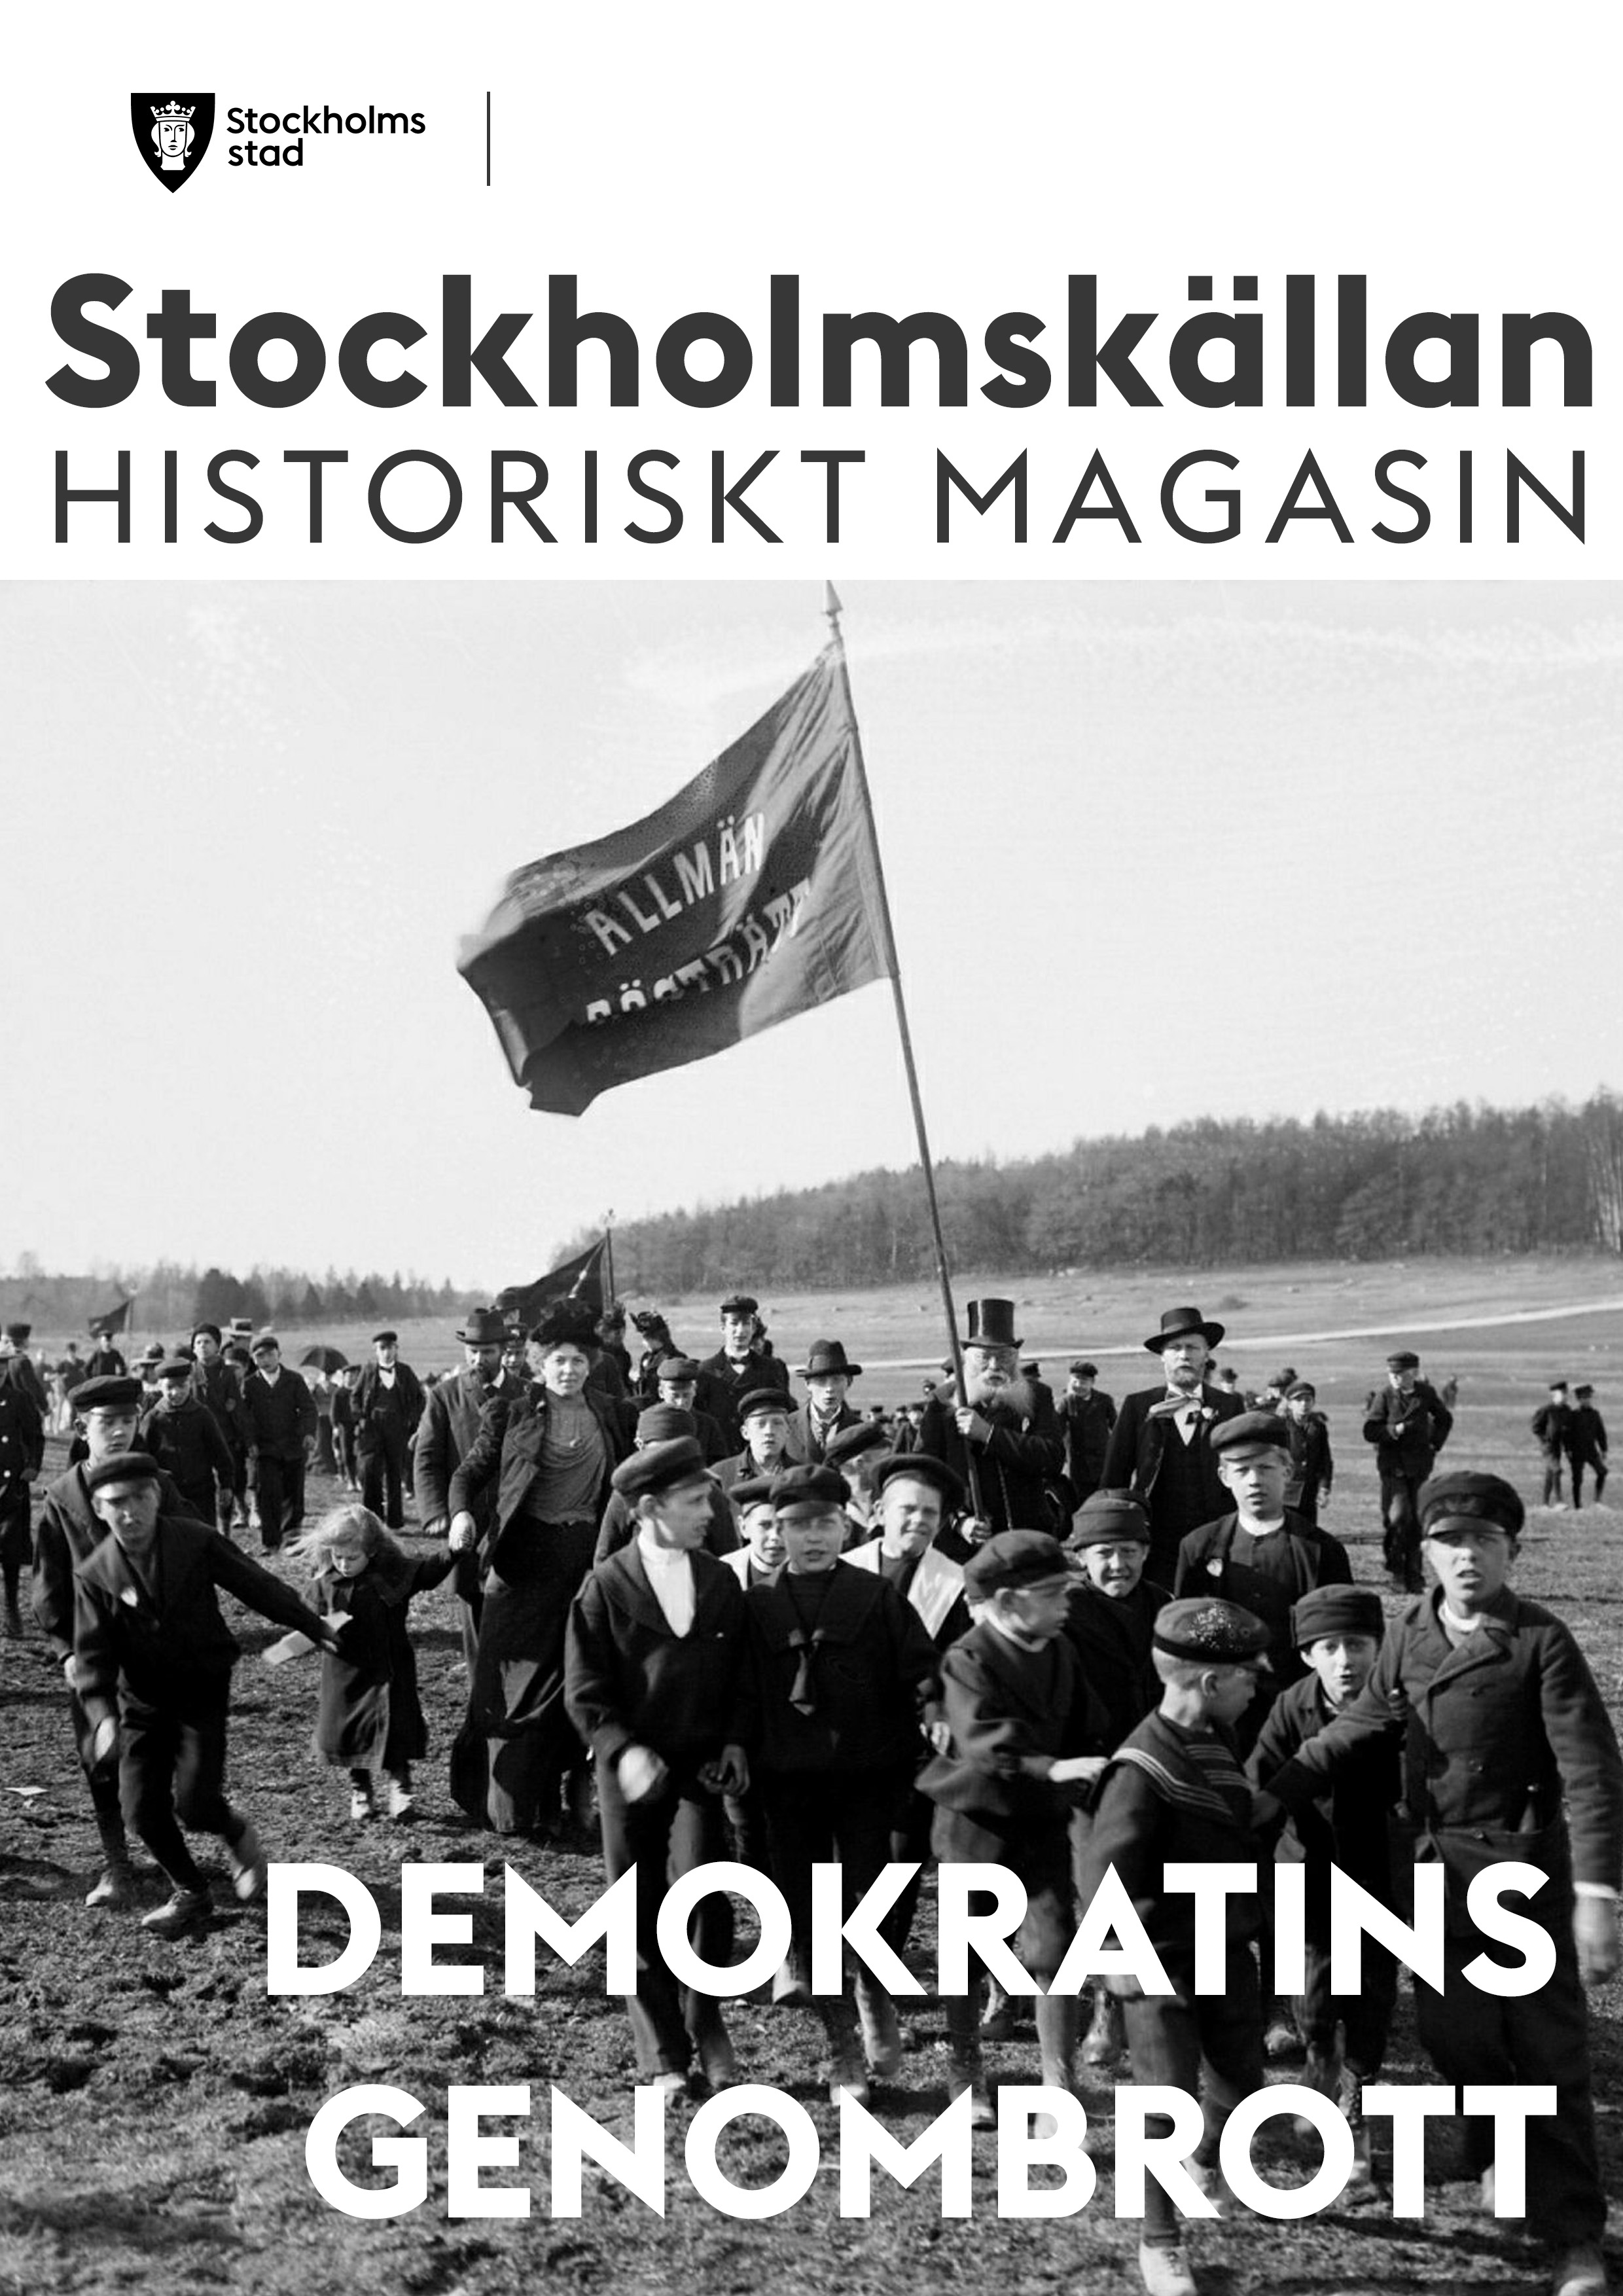 Framsidan på Stockholmskällans Historiskt Magasin: Demokratins genombrott visar en stor bild på en demonstration med barn och vuxna som kräver allmän rösträtt 1901.